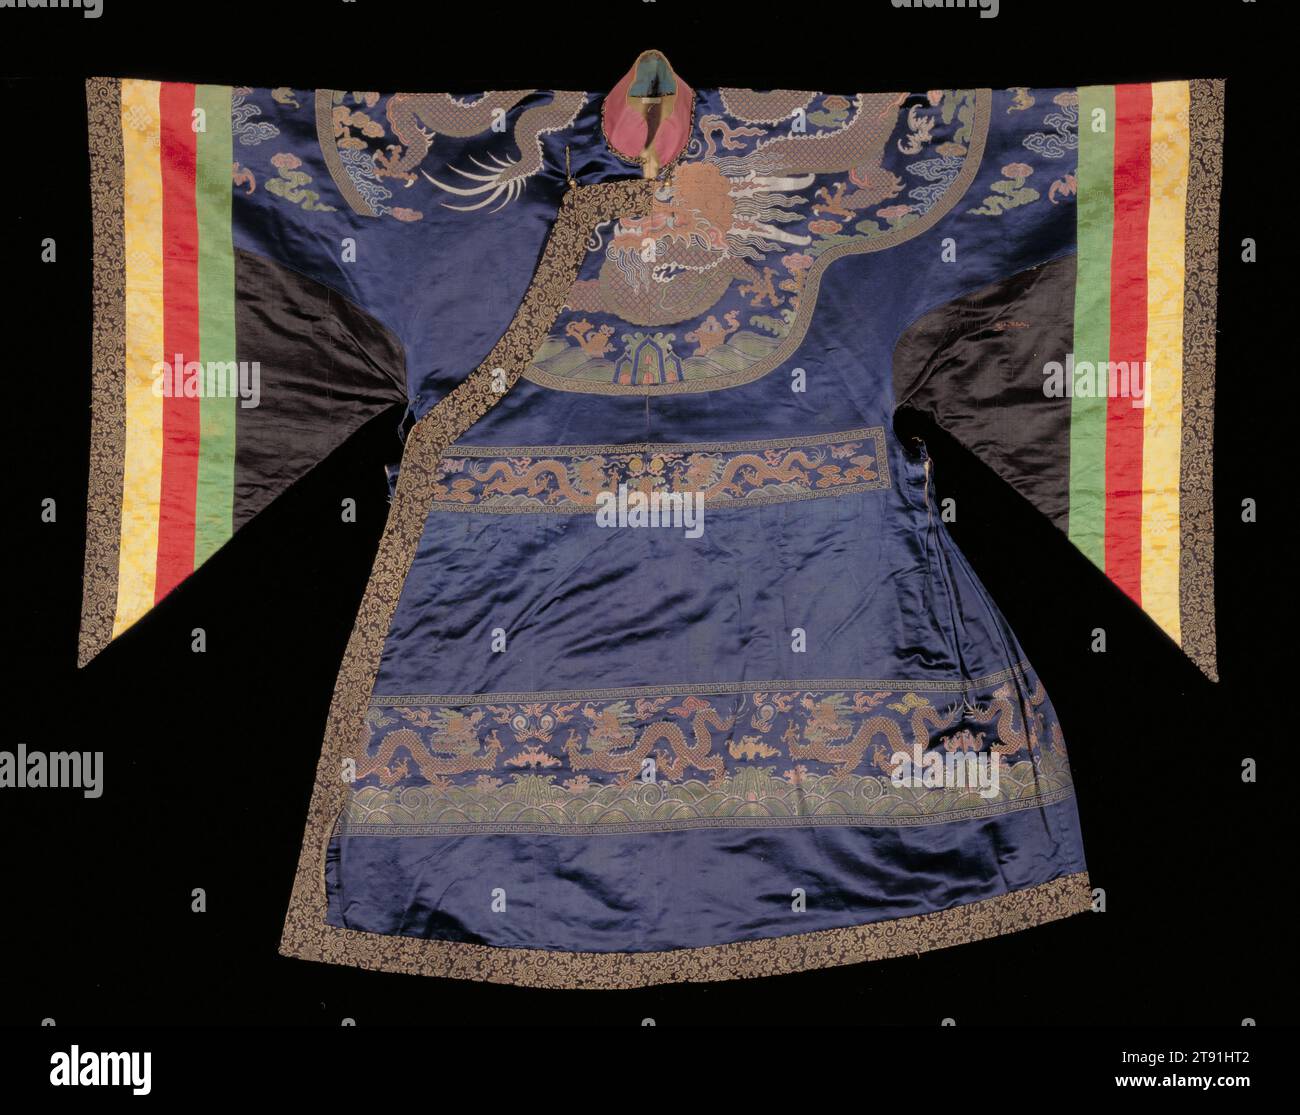 Robe de cour formelle modifiée pour la danse rituelle lamaïste, fin du 19e siècle, L.53-1/2 po., brocart de soie et damassé, Tibet, 19e siècle, les danseurs lamaïstes (bouddhistes tibétains) portaient des robes colorées comme celle-ci lorsqu'ils se produisaient dans des festivals religieux tenus dans des monastères. La robe est en fait une importation de Chine. Initialement une robe de cour chinoise, elle a été modifiée au Tibet, où l'ajout de grands panneaux triangulaires et de poignets rayés a radicalement redessiné les manches fuselées originales. Les robes de cour avec un dragon brodé sur le cou/la poitrine étaient populaires auprès des bouddhistes de l'Himalaya. La dynastie Qing Banque D'Images